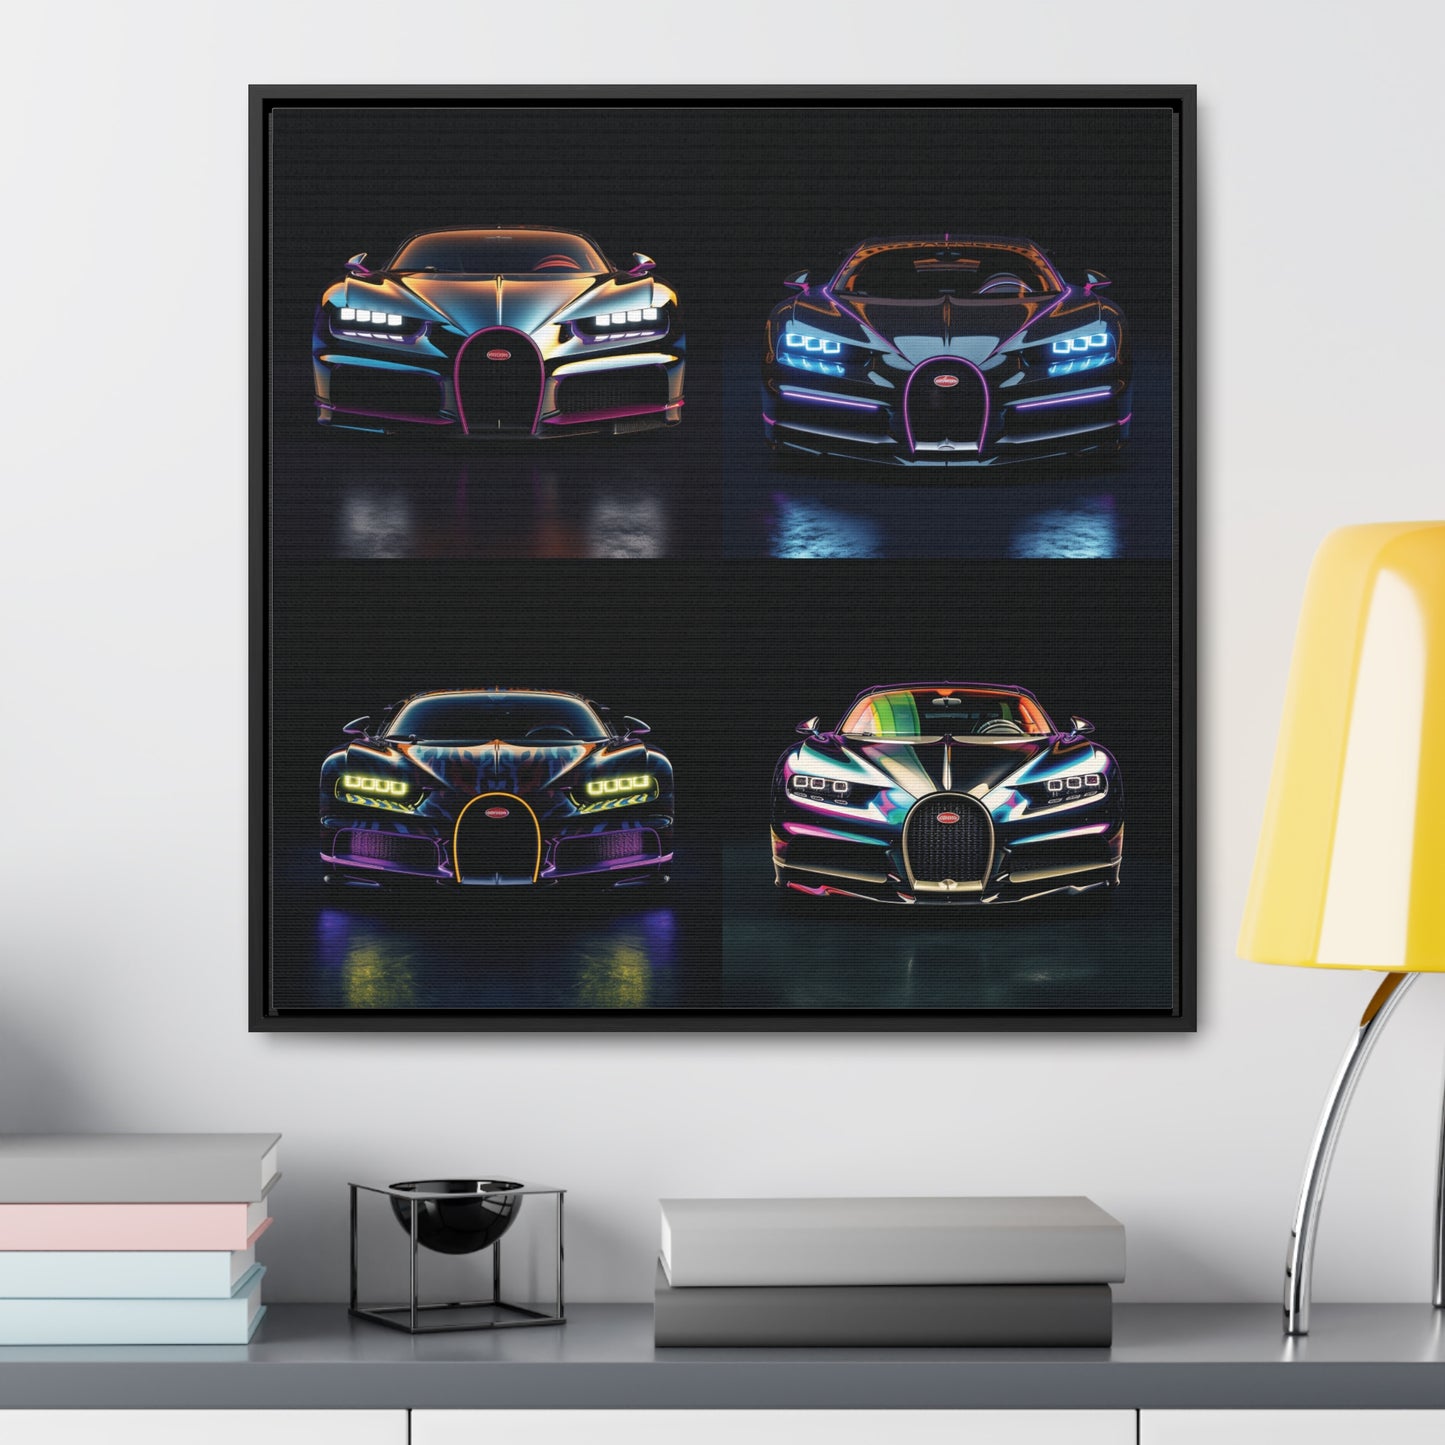 Gallery Canvas Wraps, Square Frame Hyper Bugatti Chiron 5